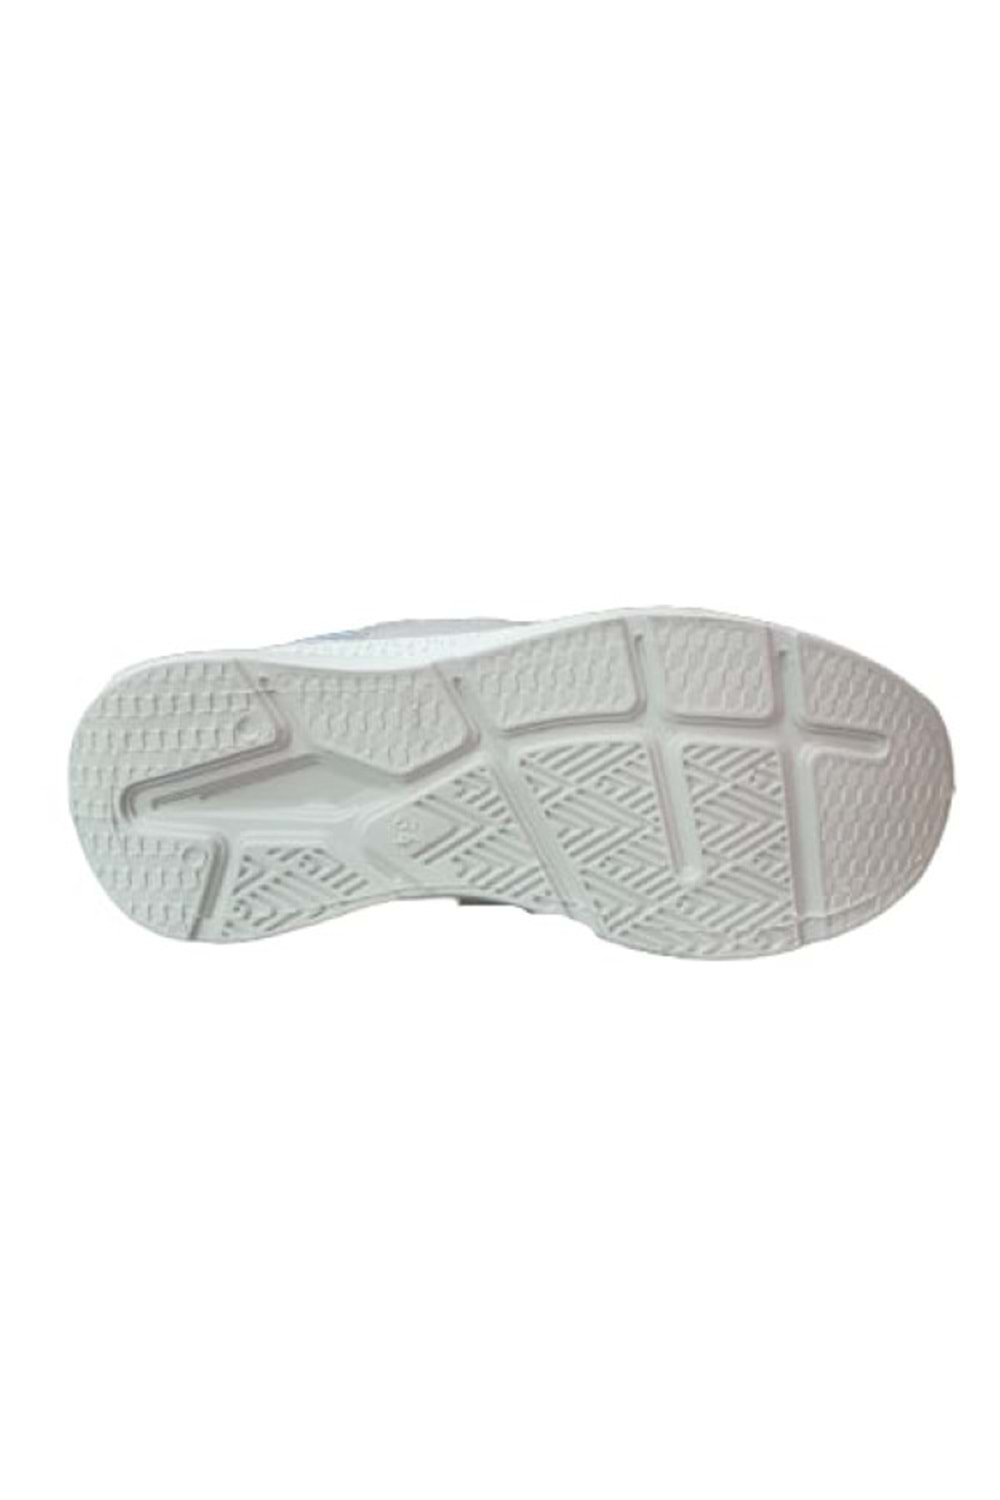 Bolimex ÇocuK Kız Cırtlı Bağcıklı Sneakers Spor Ayakkabı B-00233 - Gri